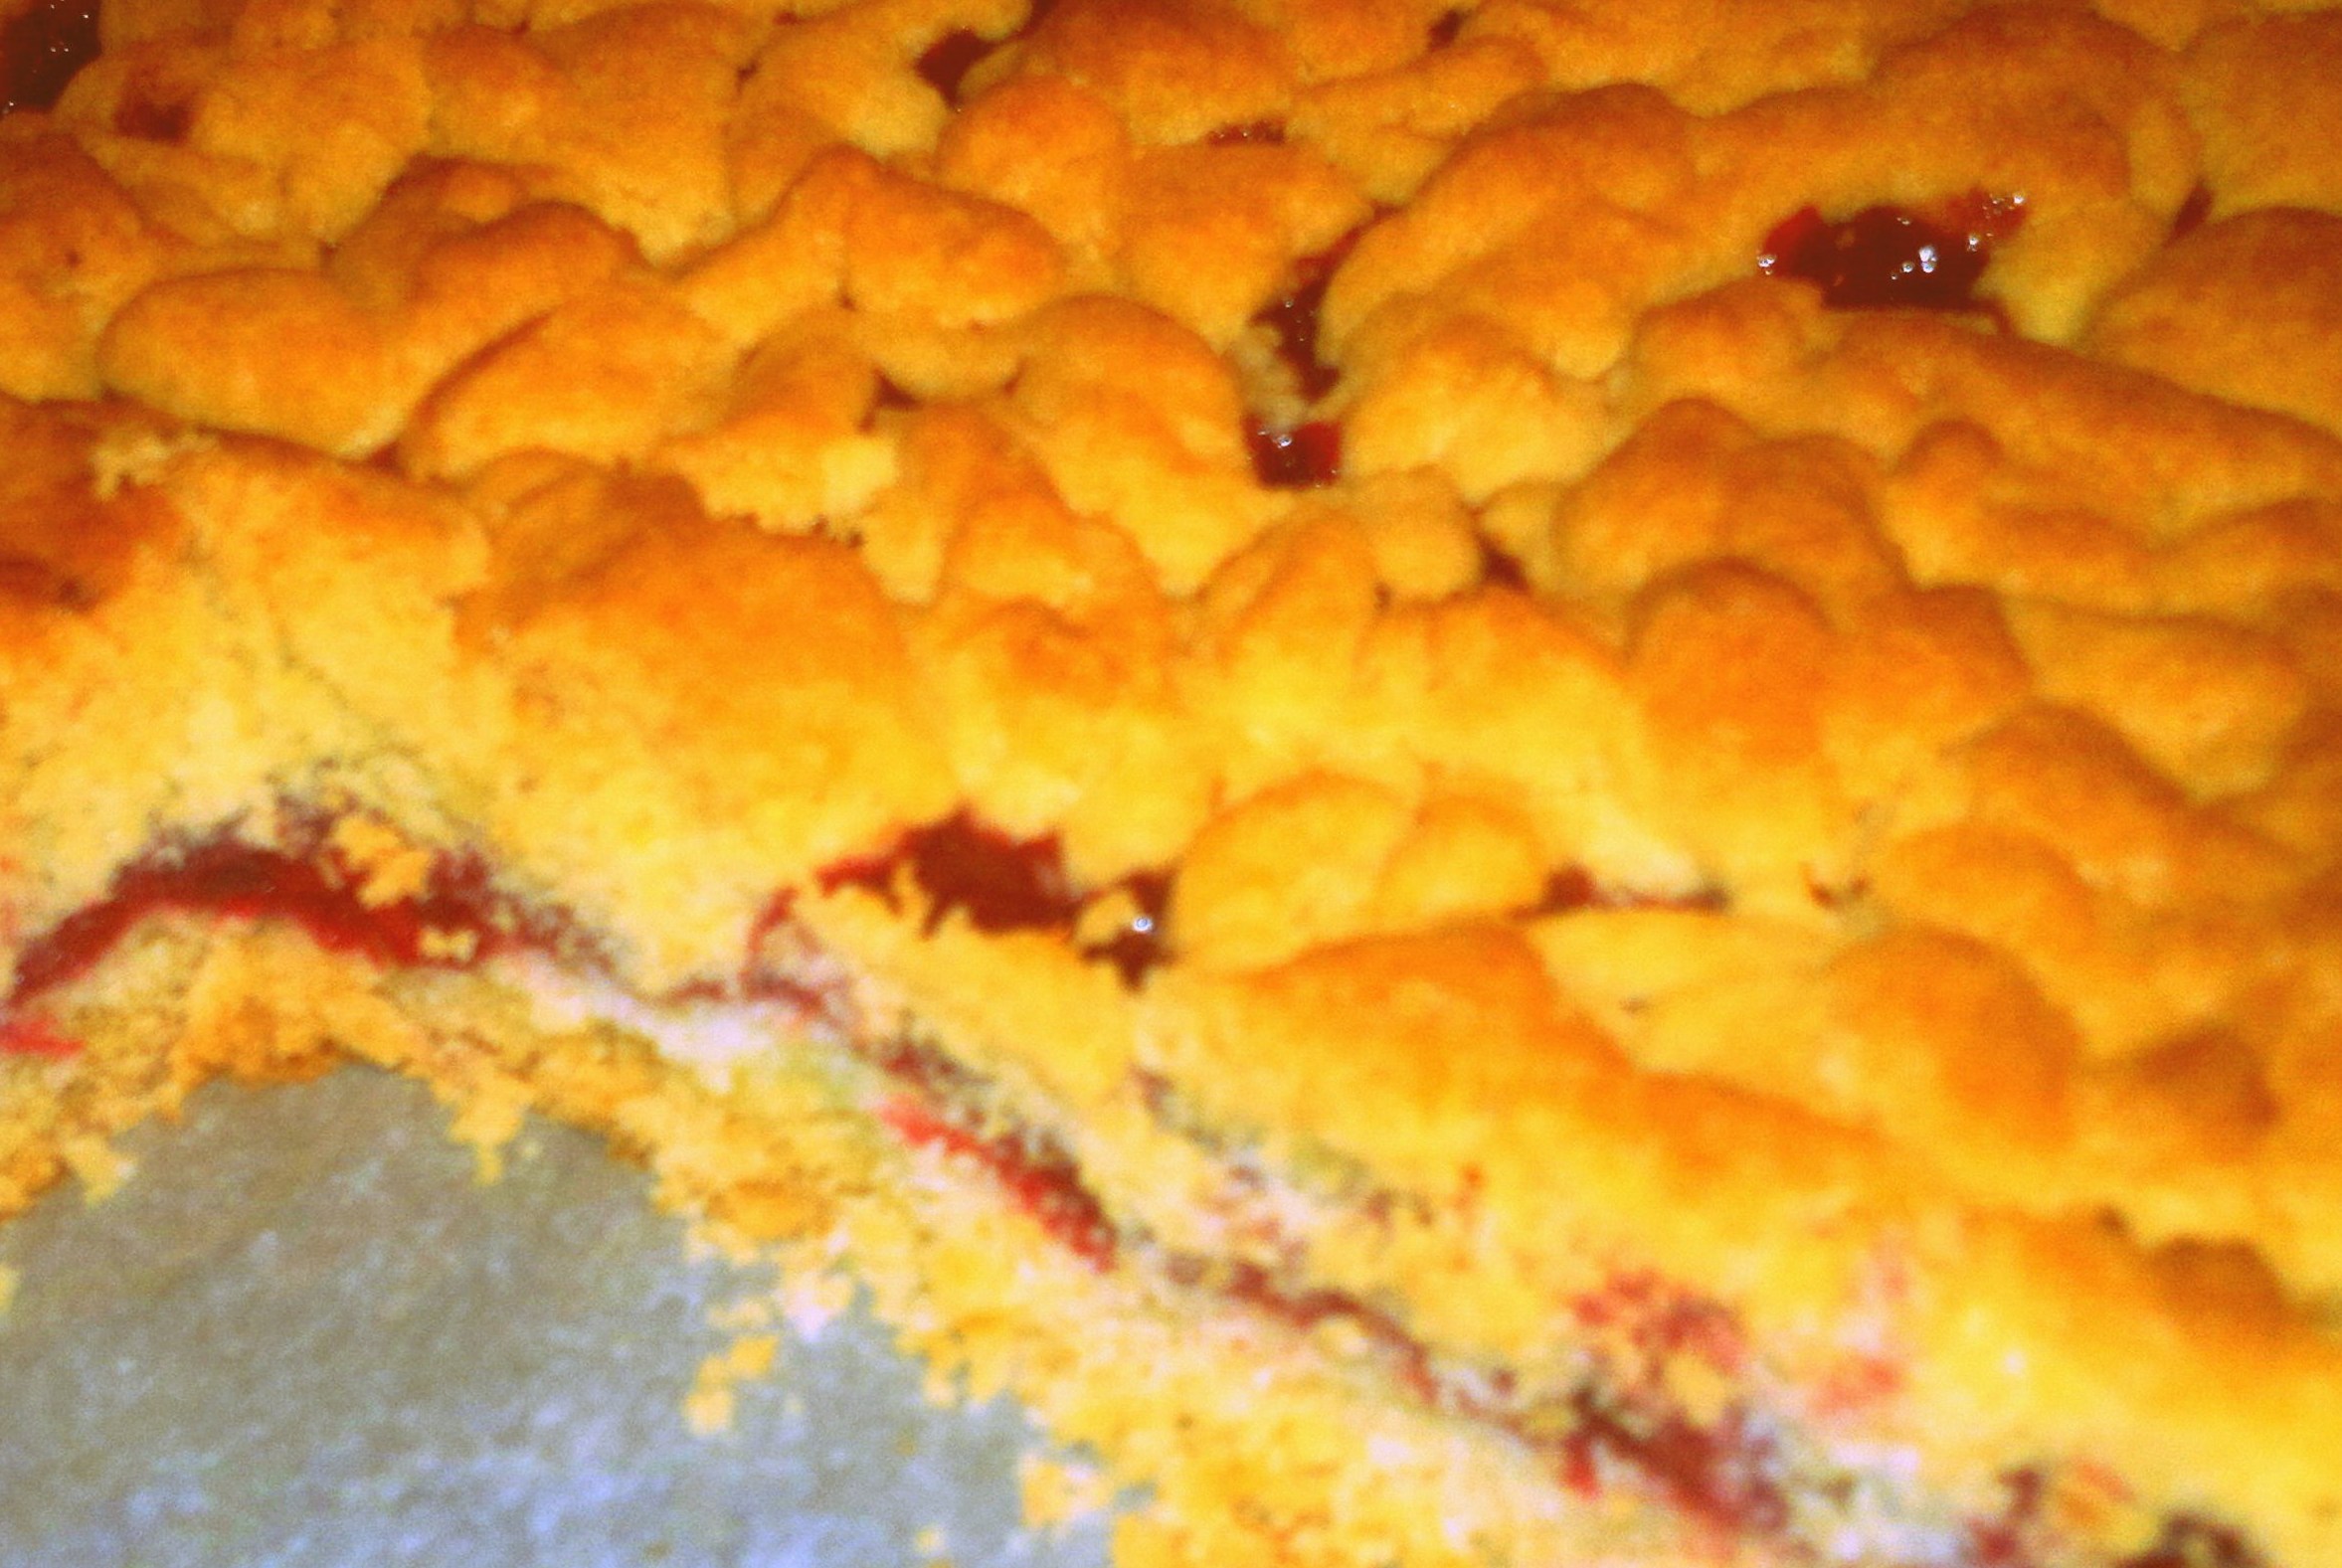 Пирог с замороженными ягодами – кулинарный рецепт